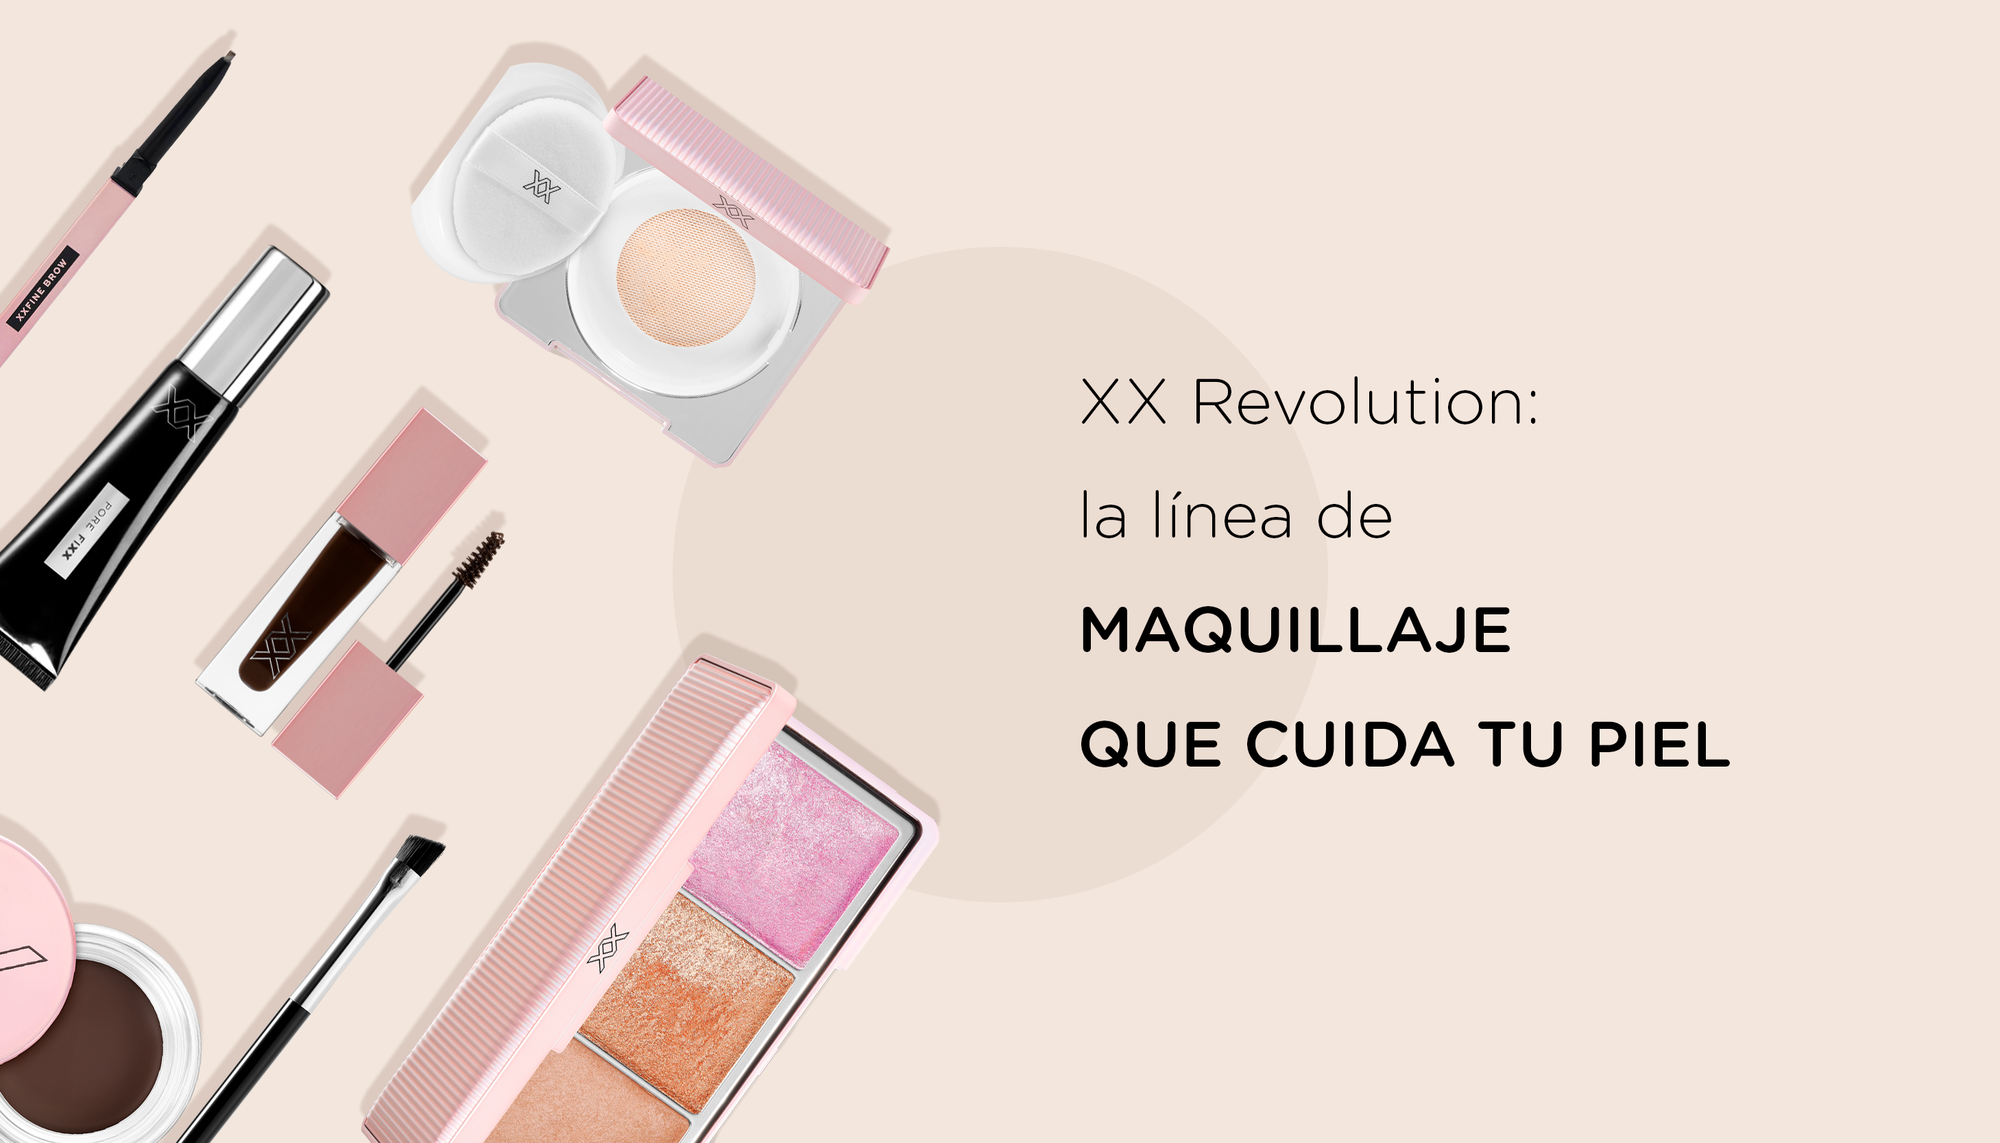 XX Revolution: la línea de maquillaje que cuida tu piel.